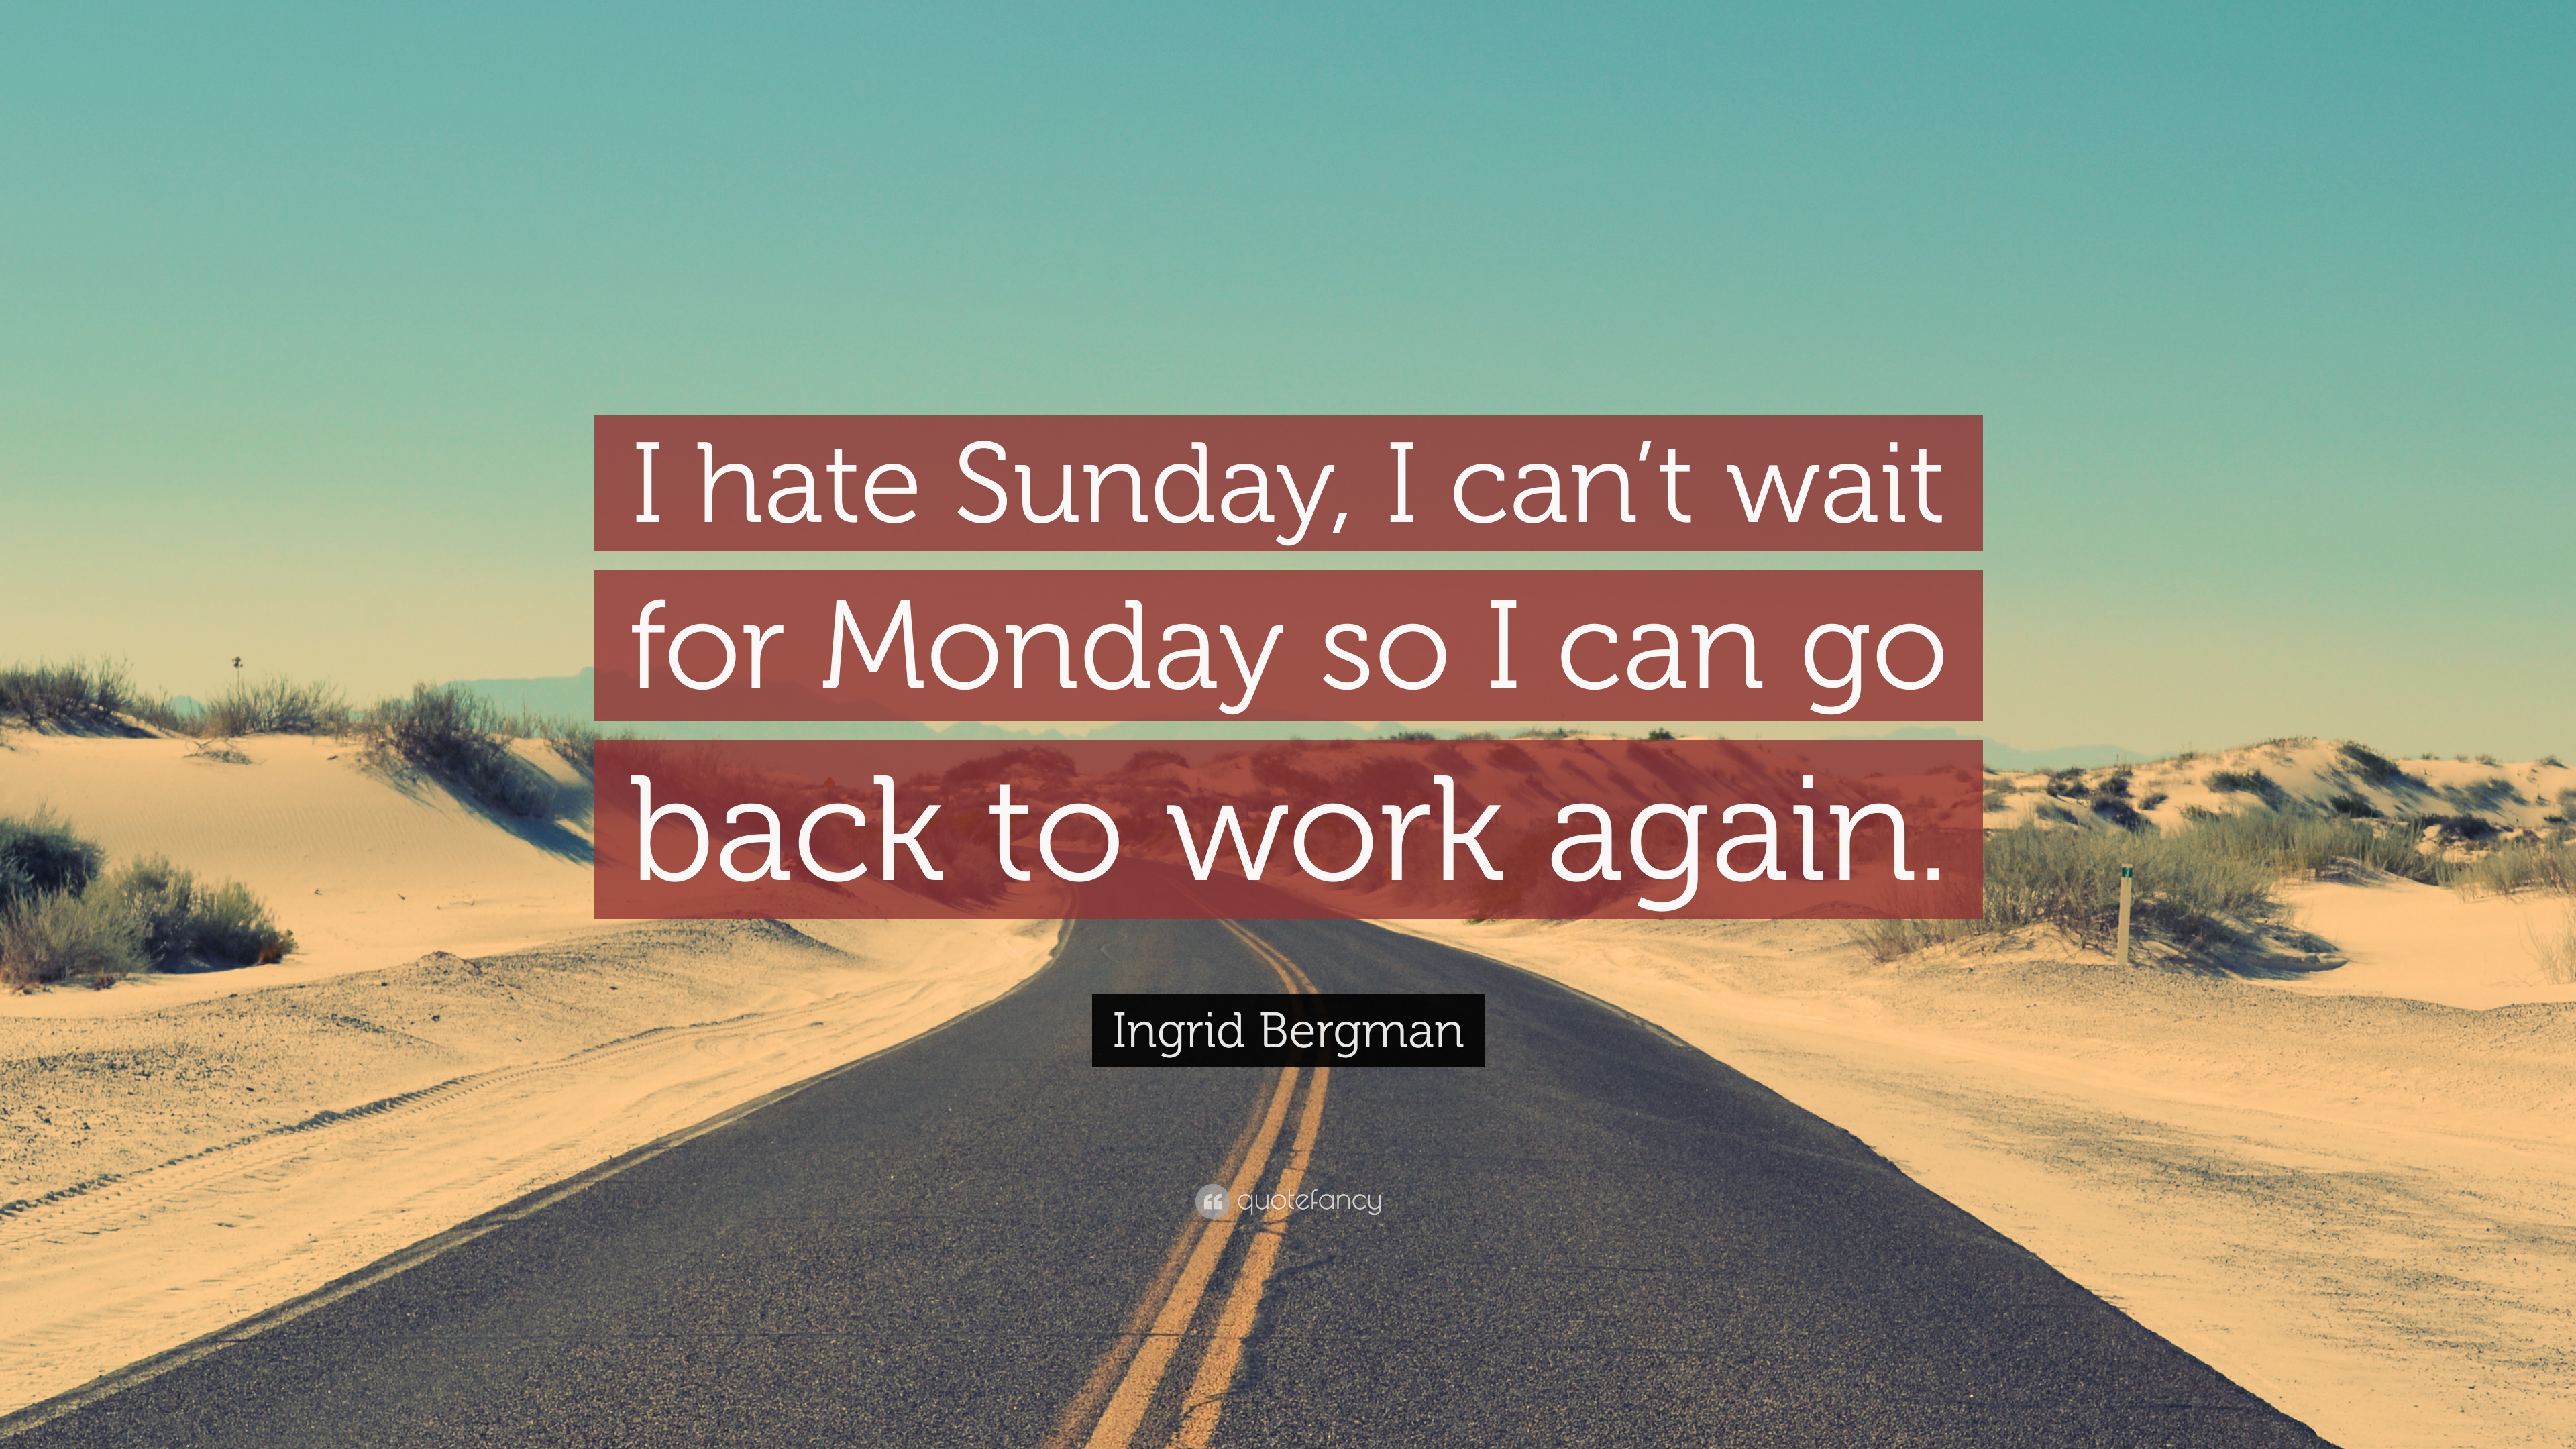 Ingrid Bergman Quote: “I hate Sunday, I can't wait for Monday so I